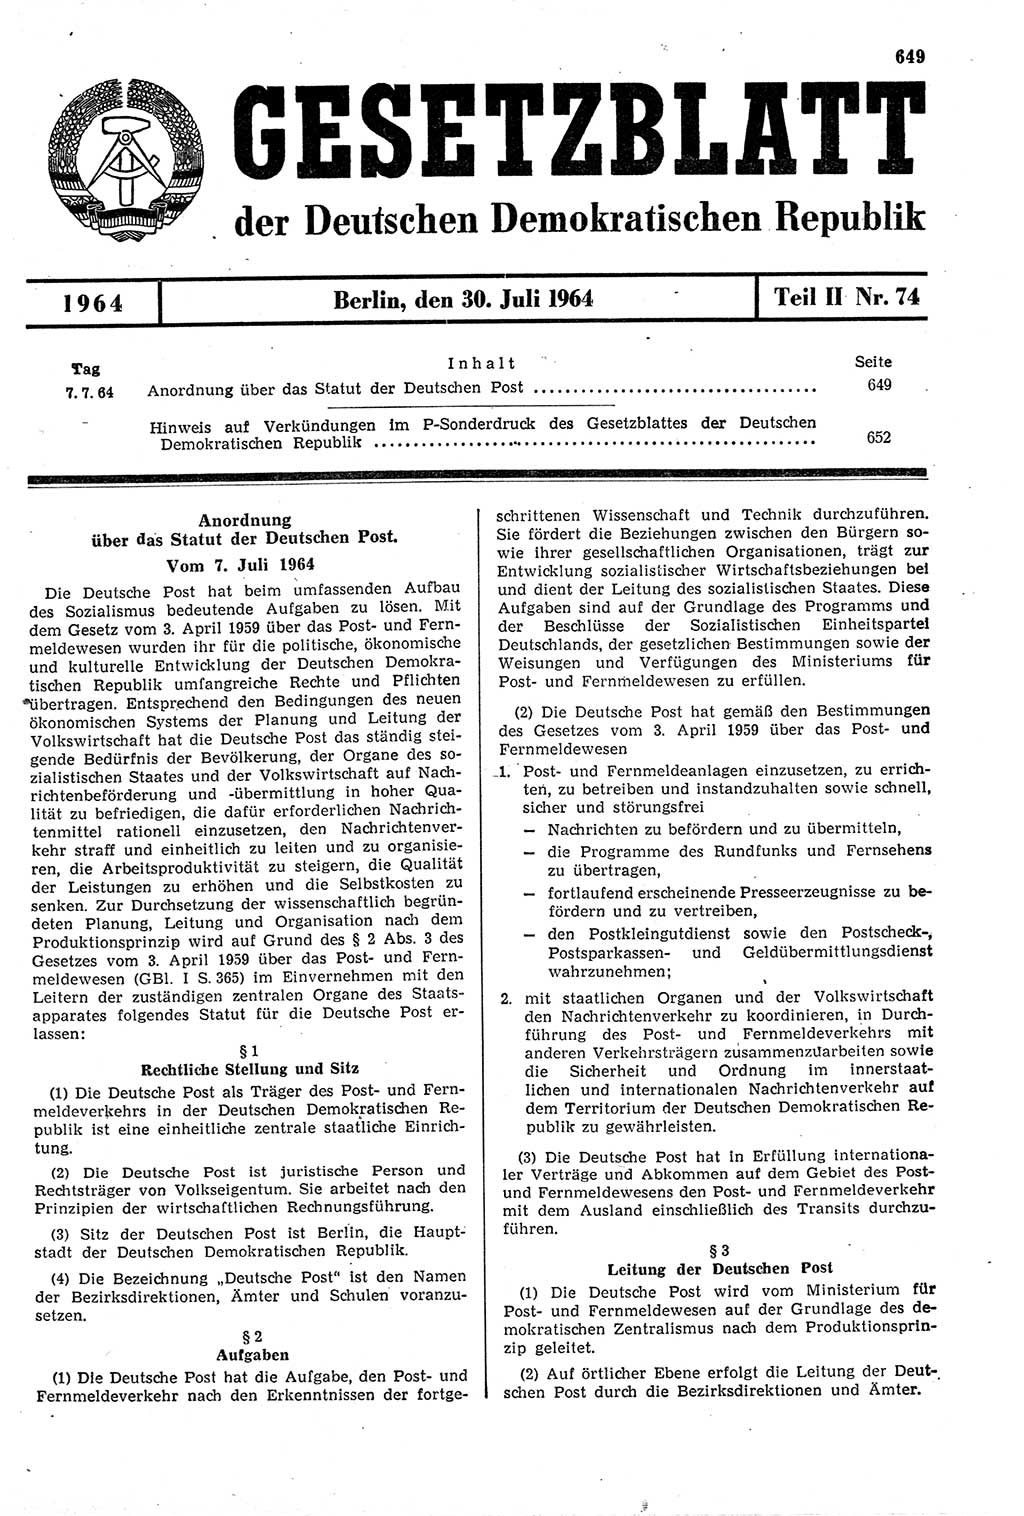 Gesetzblatt (GBl.) der Deutschen Demokratischen Republik (DDR) Teil ⅠⅠ 1964, Seite 649 (GBl. DDR ⅠⅠ 1964, S. 649)